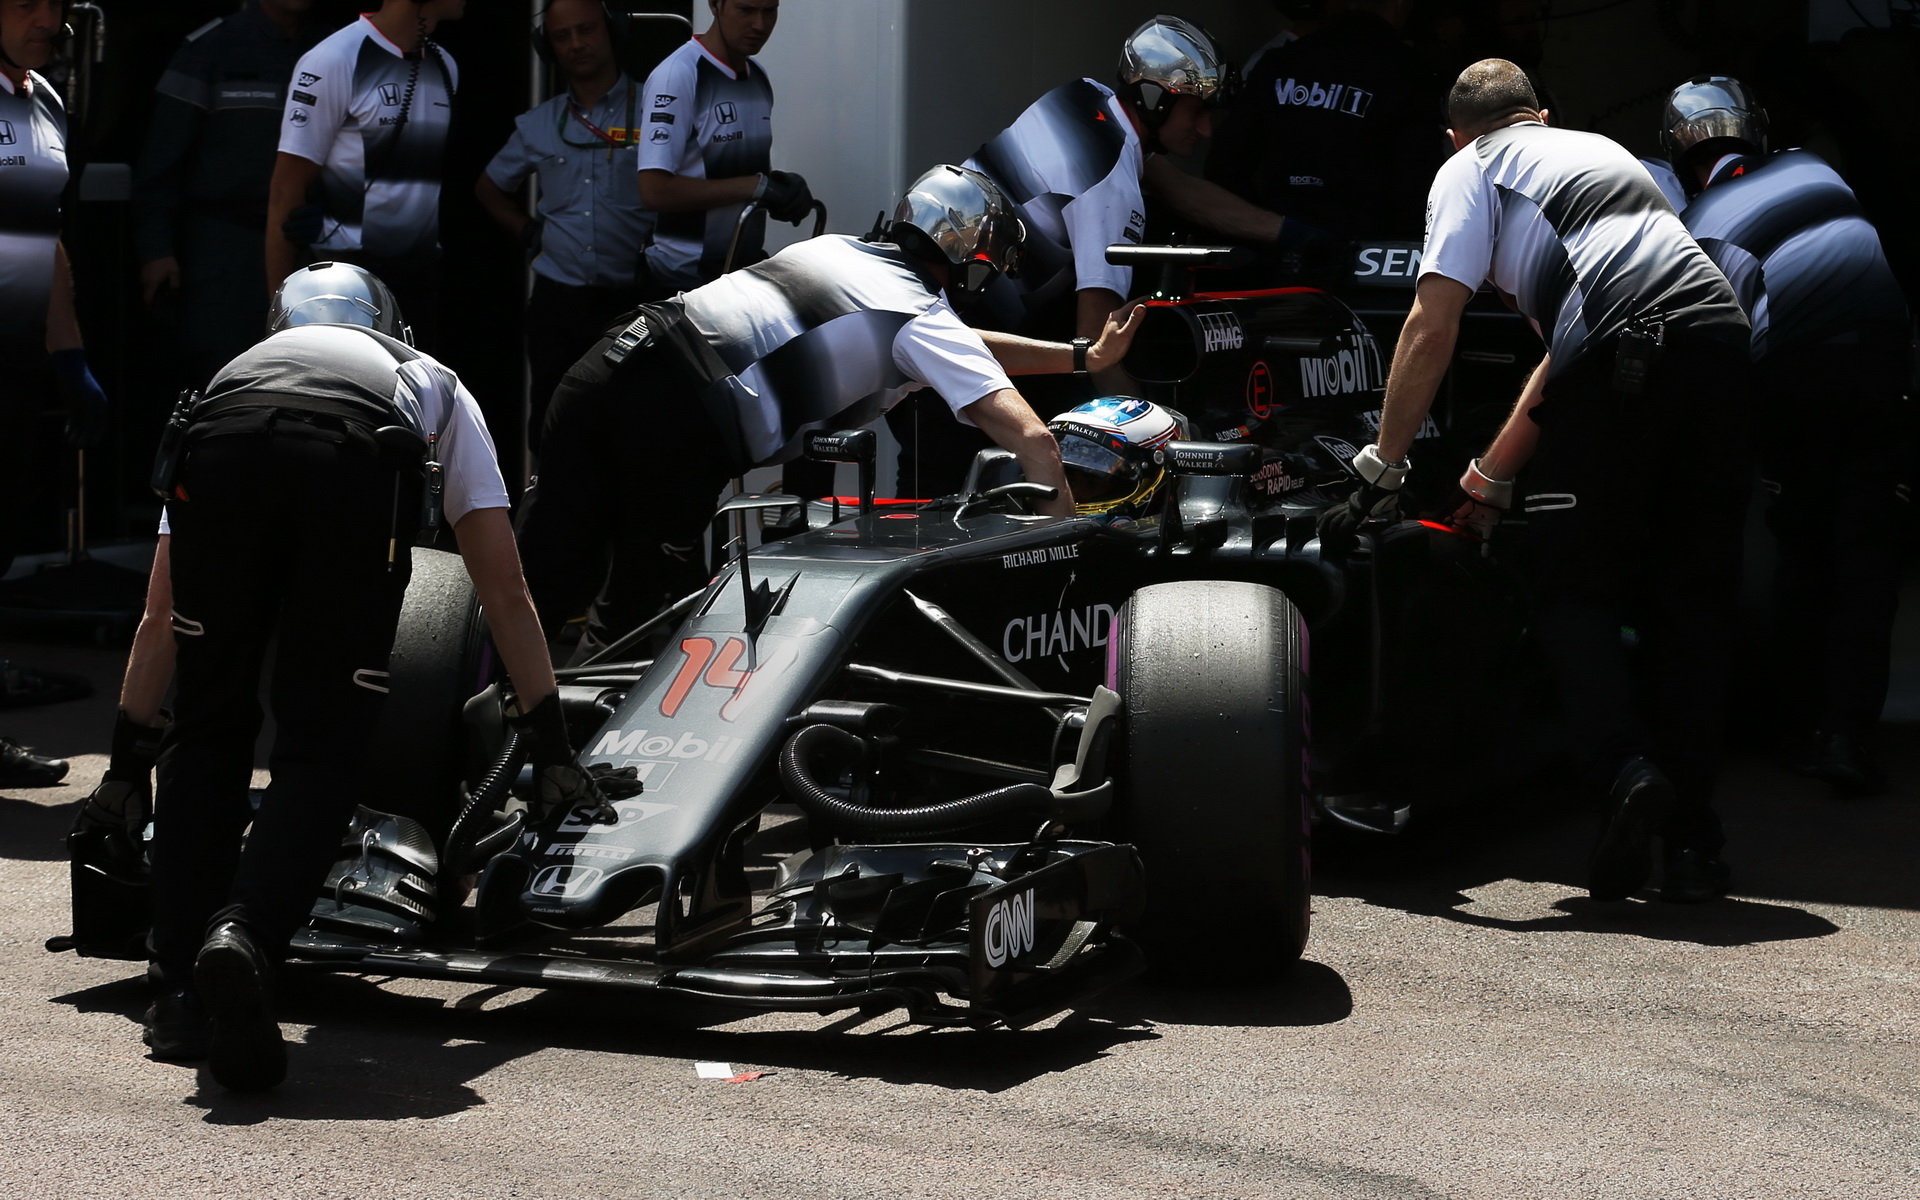 McLaren zatím hledá nějakou legální fintu, jak během jízdy snížit tlak v pneumatikách - soupeři před ním už na ní přišli